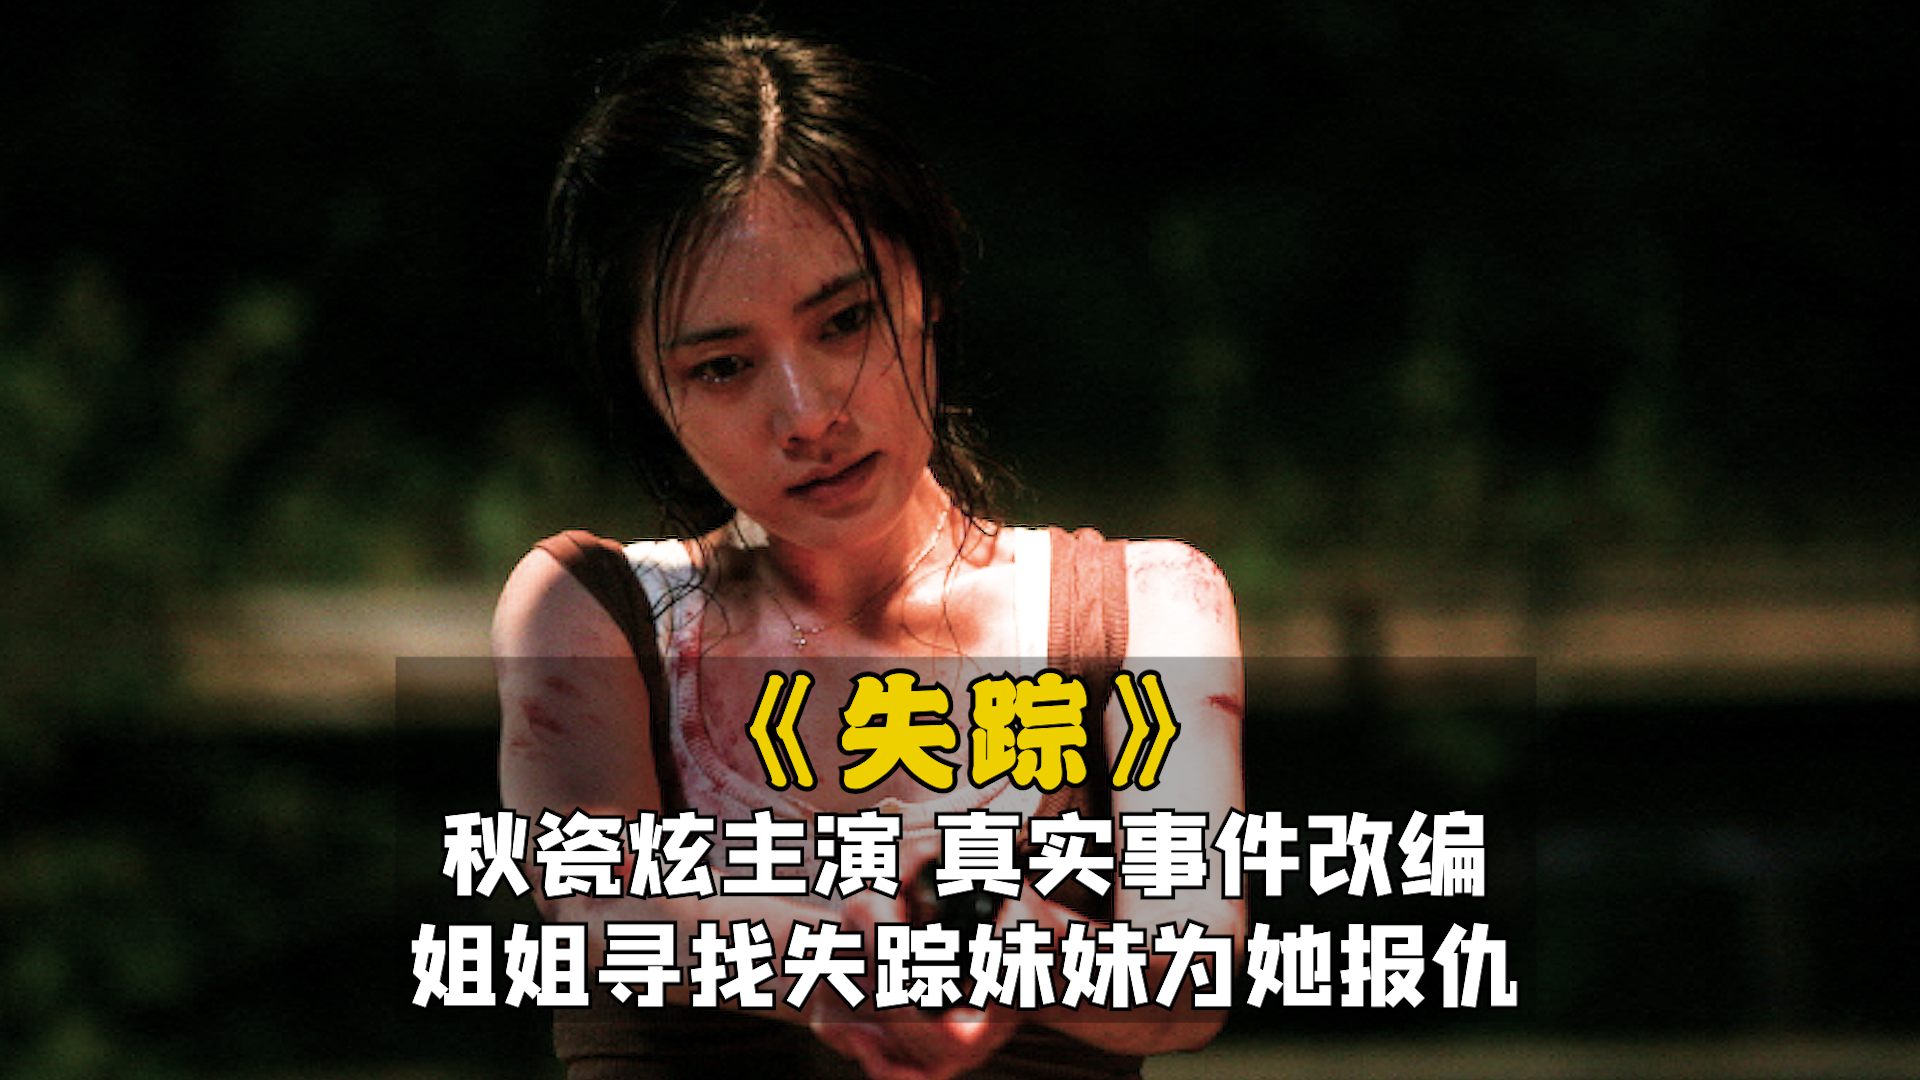 秋瓷炫主演韩国电影《失踪》： 真实案件改编！ 姐姐寻找失踪妹妹为她报仇！